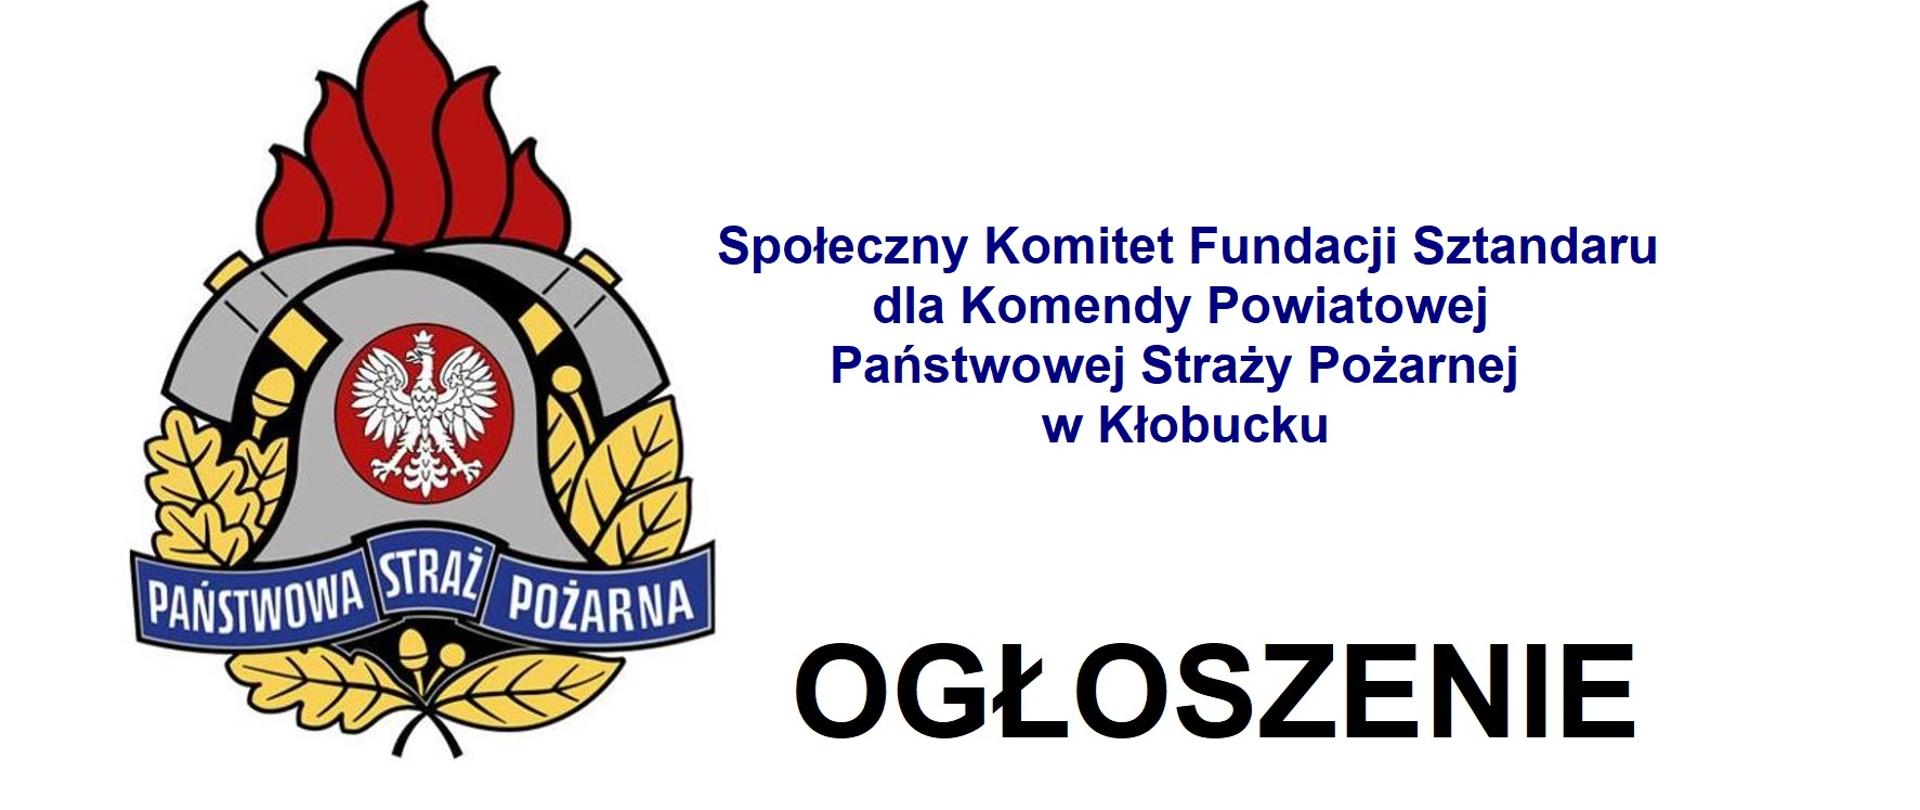 Zdjęcie przedstawia logo PSP oraz napis Społeczny Komitet Fundacji Sztandaru dla Komendy Powiatowej Państwowej Straży Pożarnej w Kłobucku